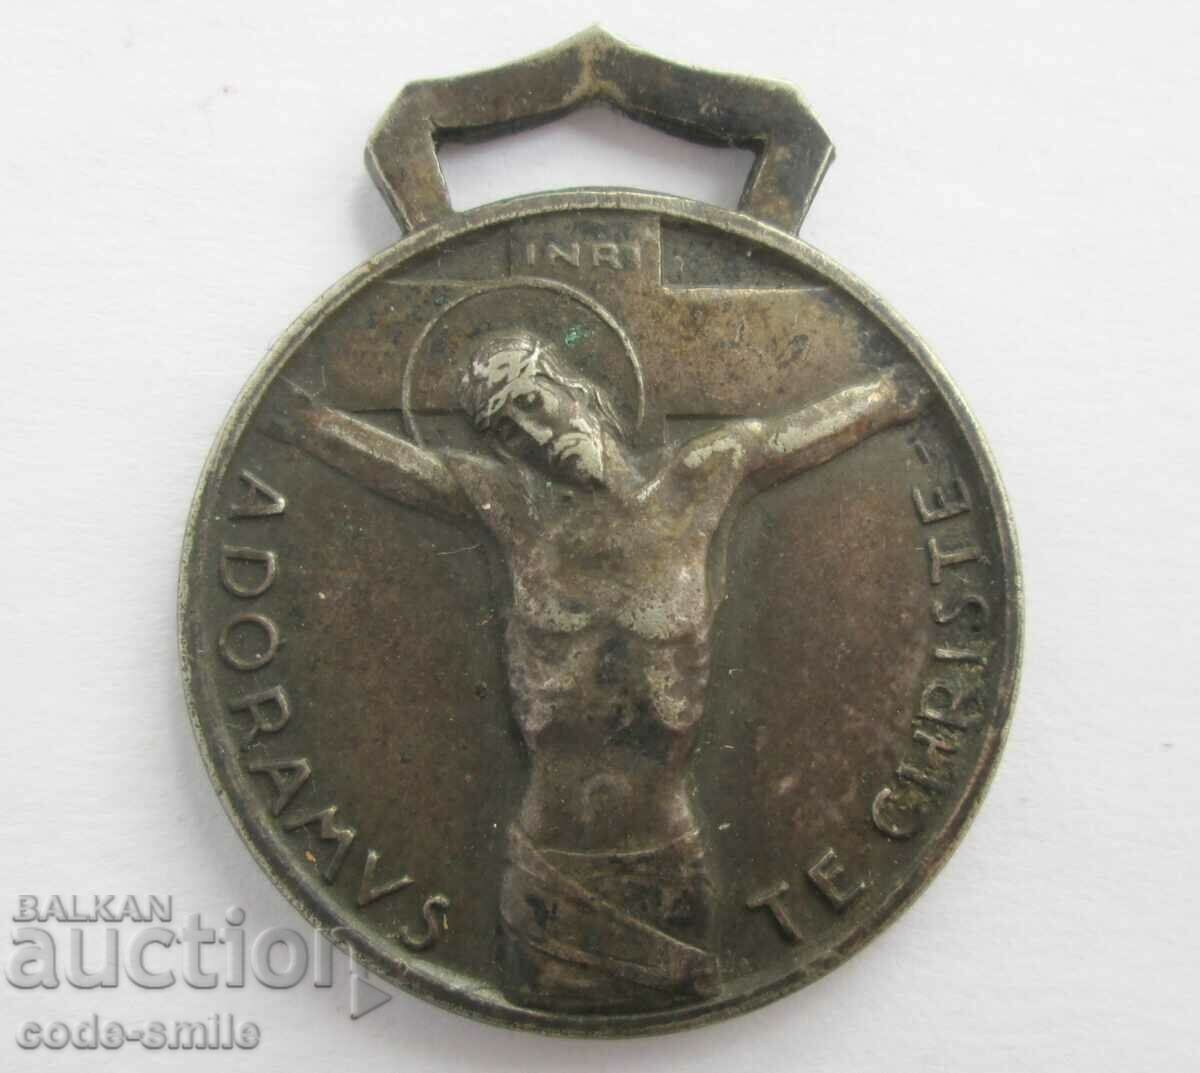 Medalia veche a răscumpărării religioase creștine 1933